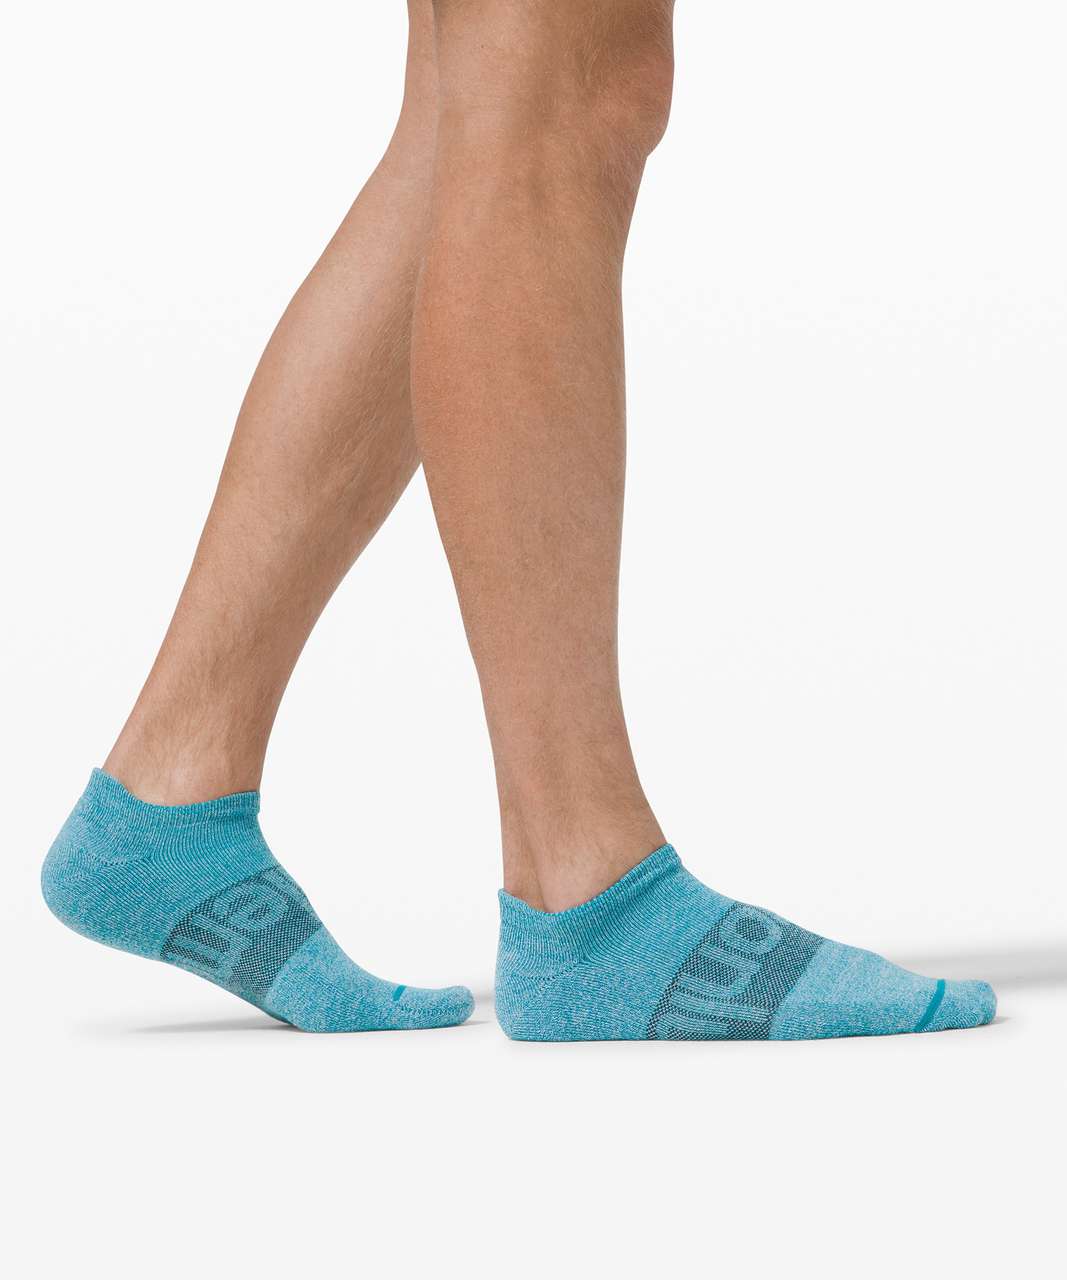 Footie Socks & No-Shows – Sock Dreams